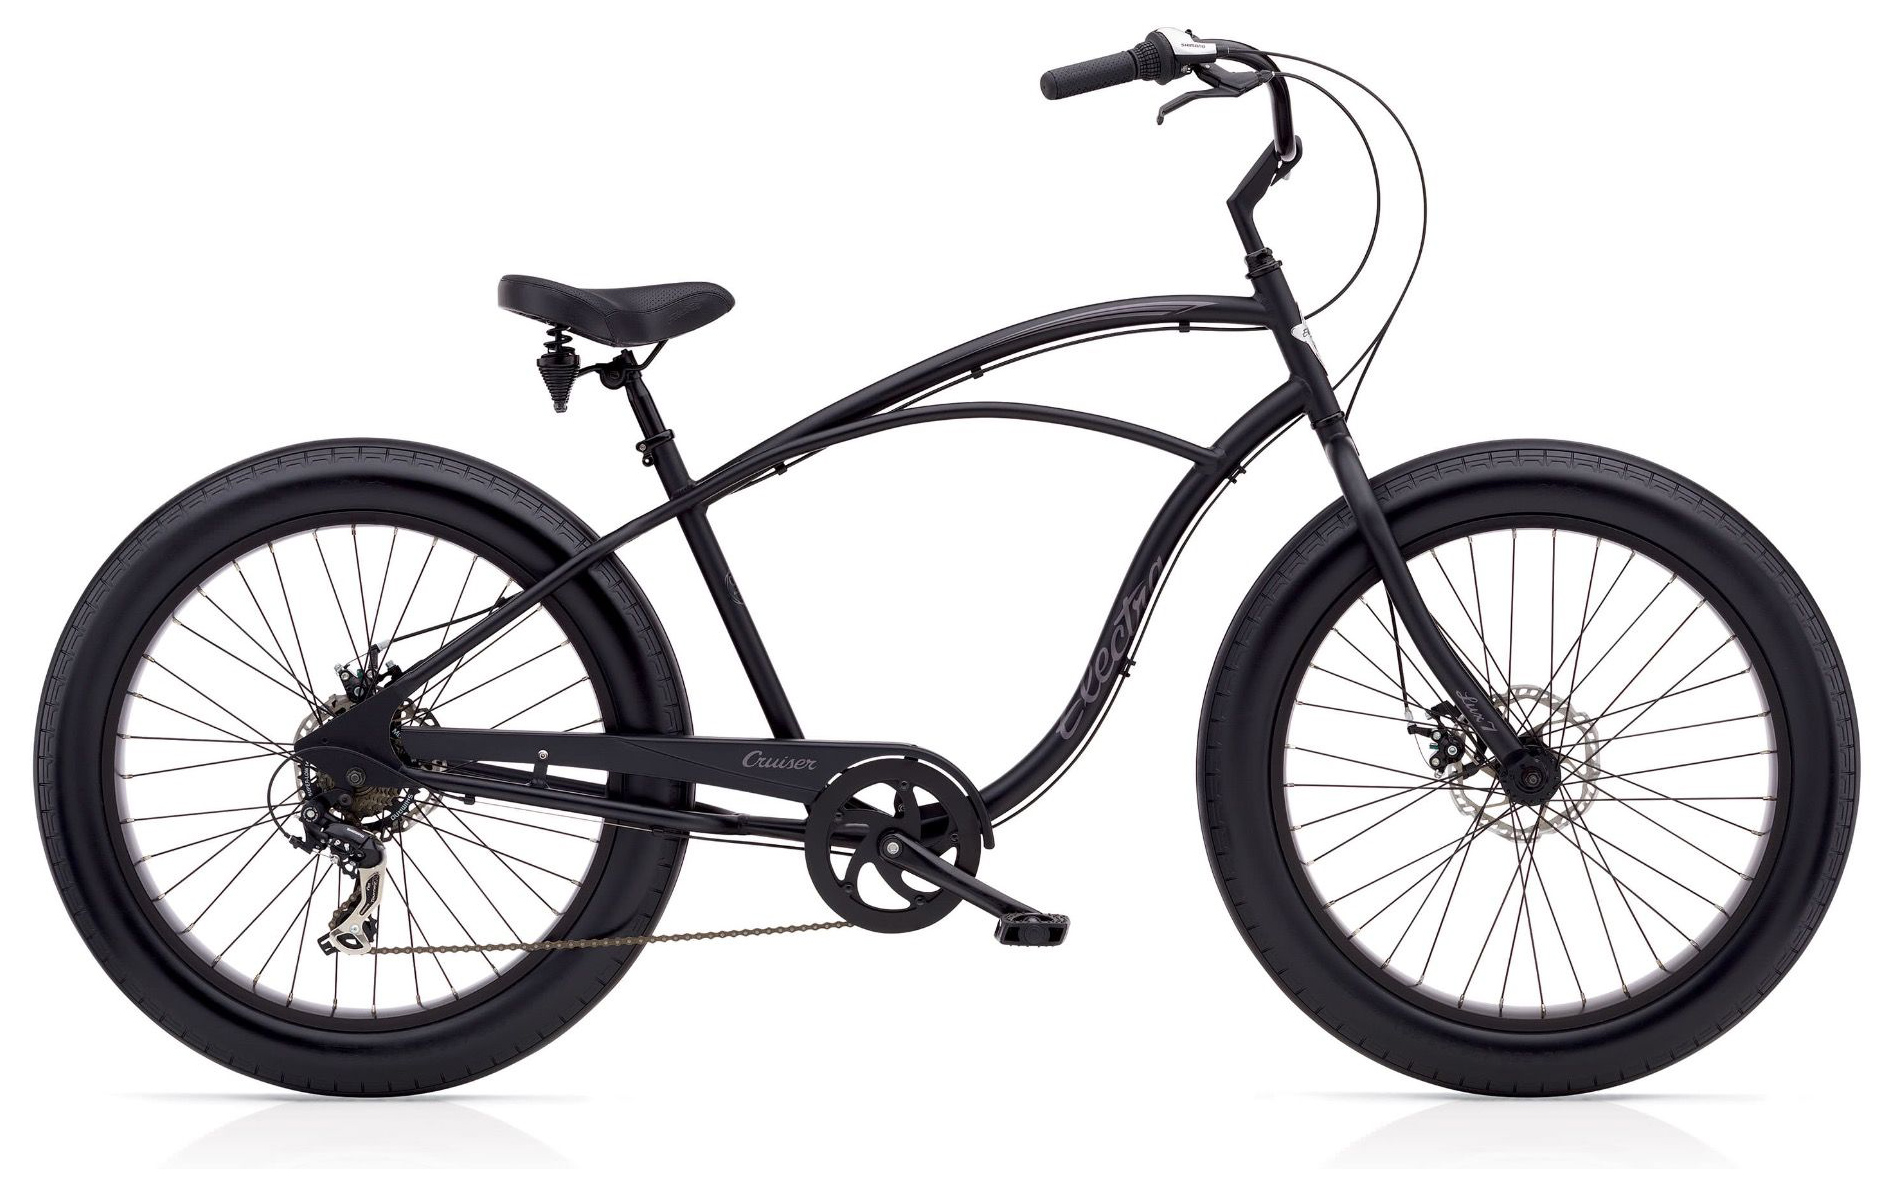  Отзывы о Велосипеде круизере Electra Lux Fat Tire 7D 2019